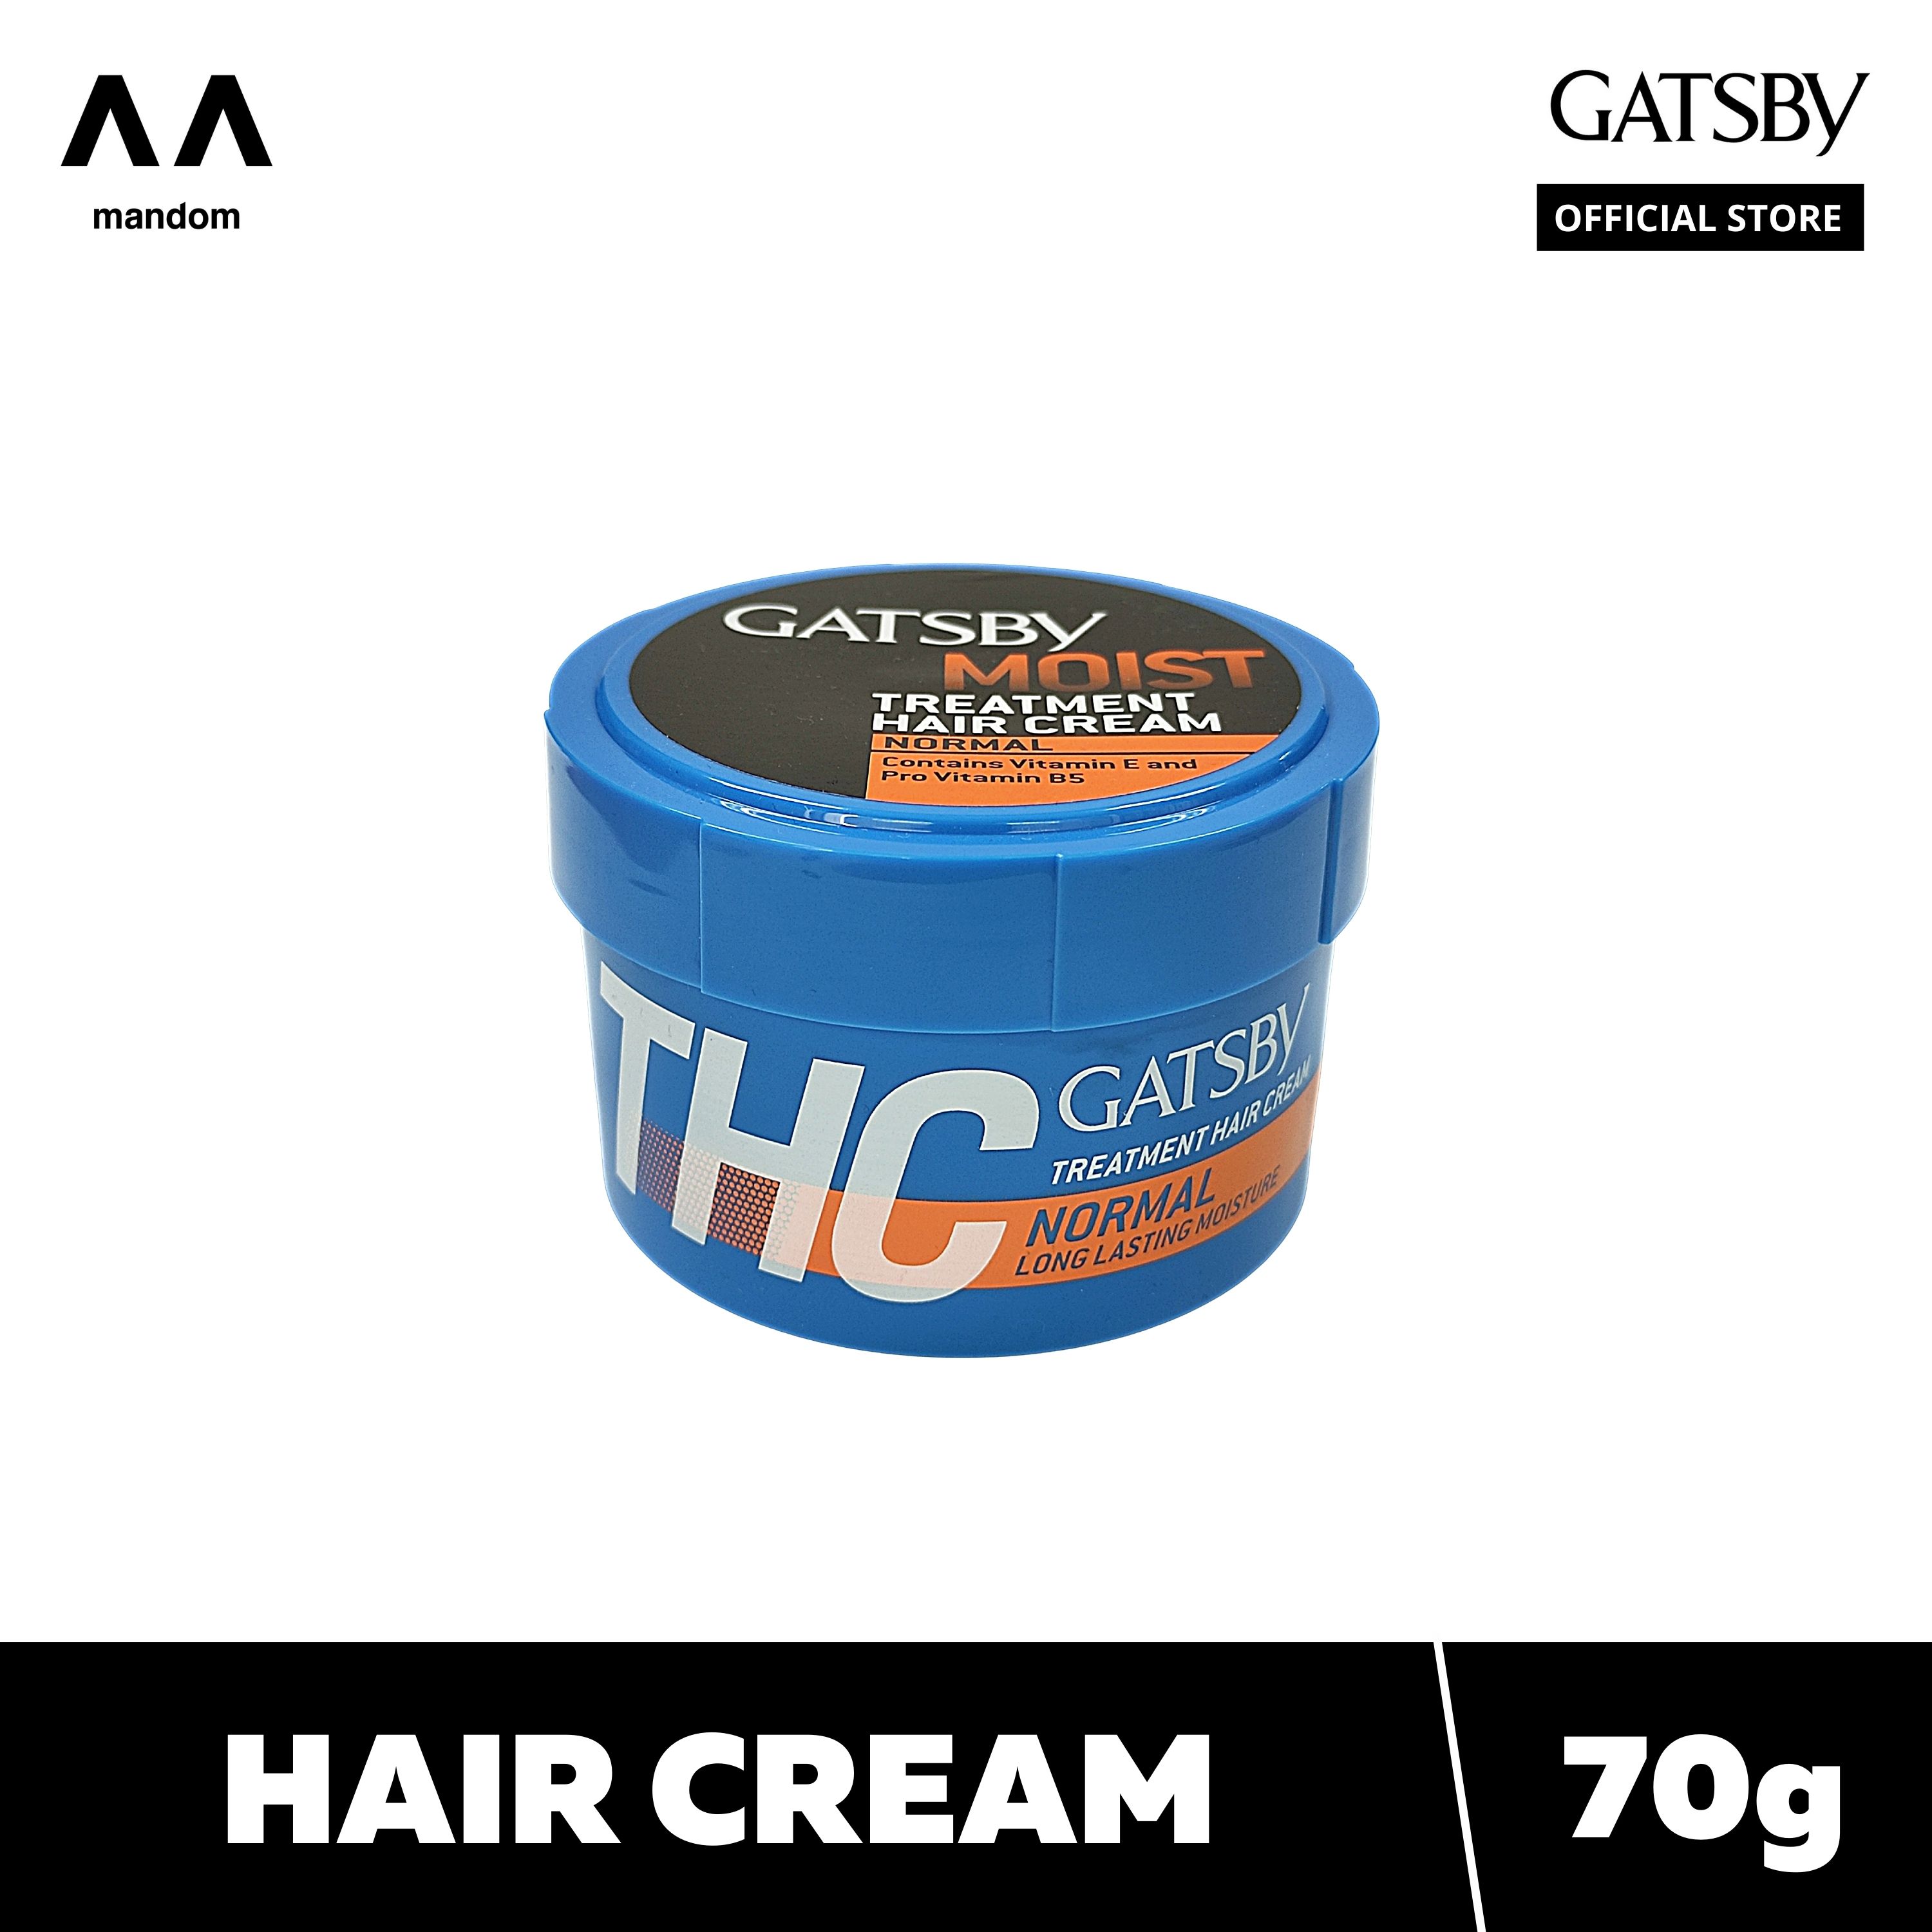 GATSBY TREATMENT HAIR CREAM MOIST (NORMAL) 70g | Lazada PH